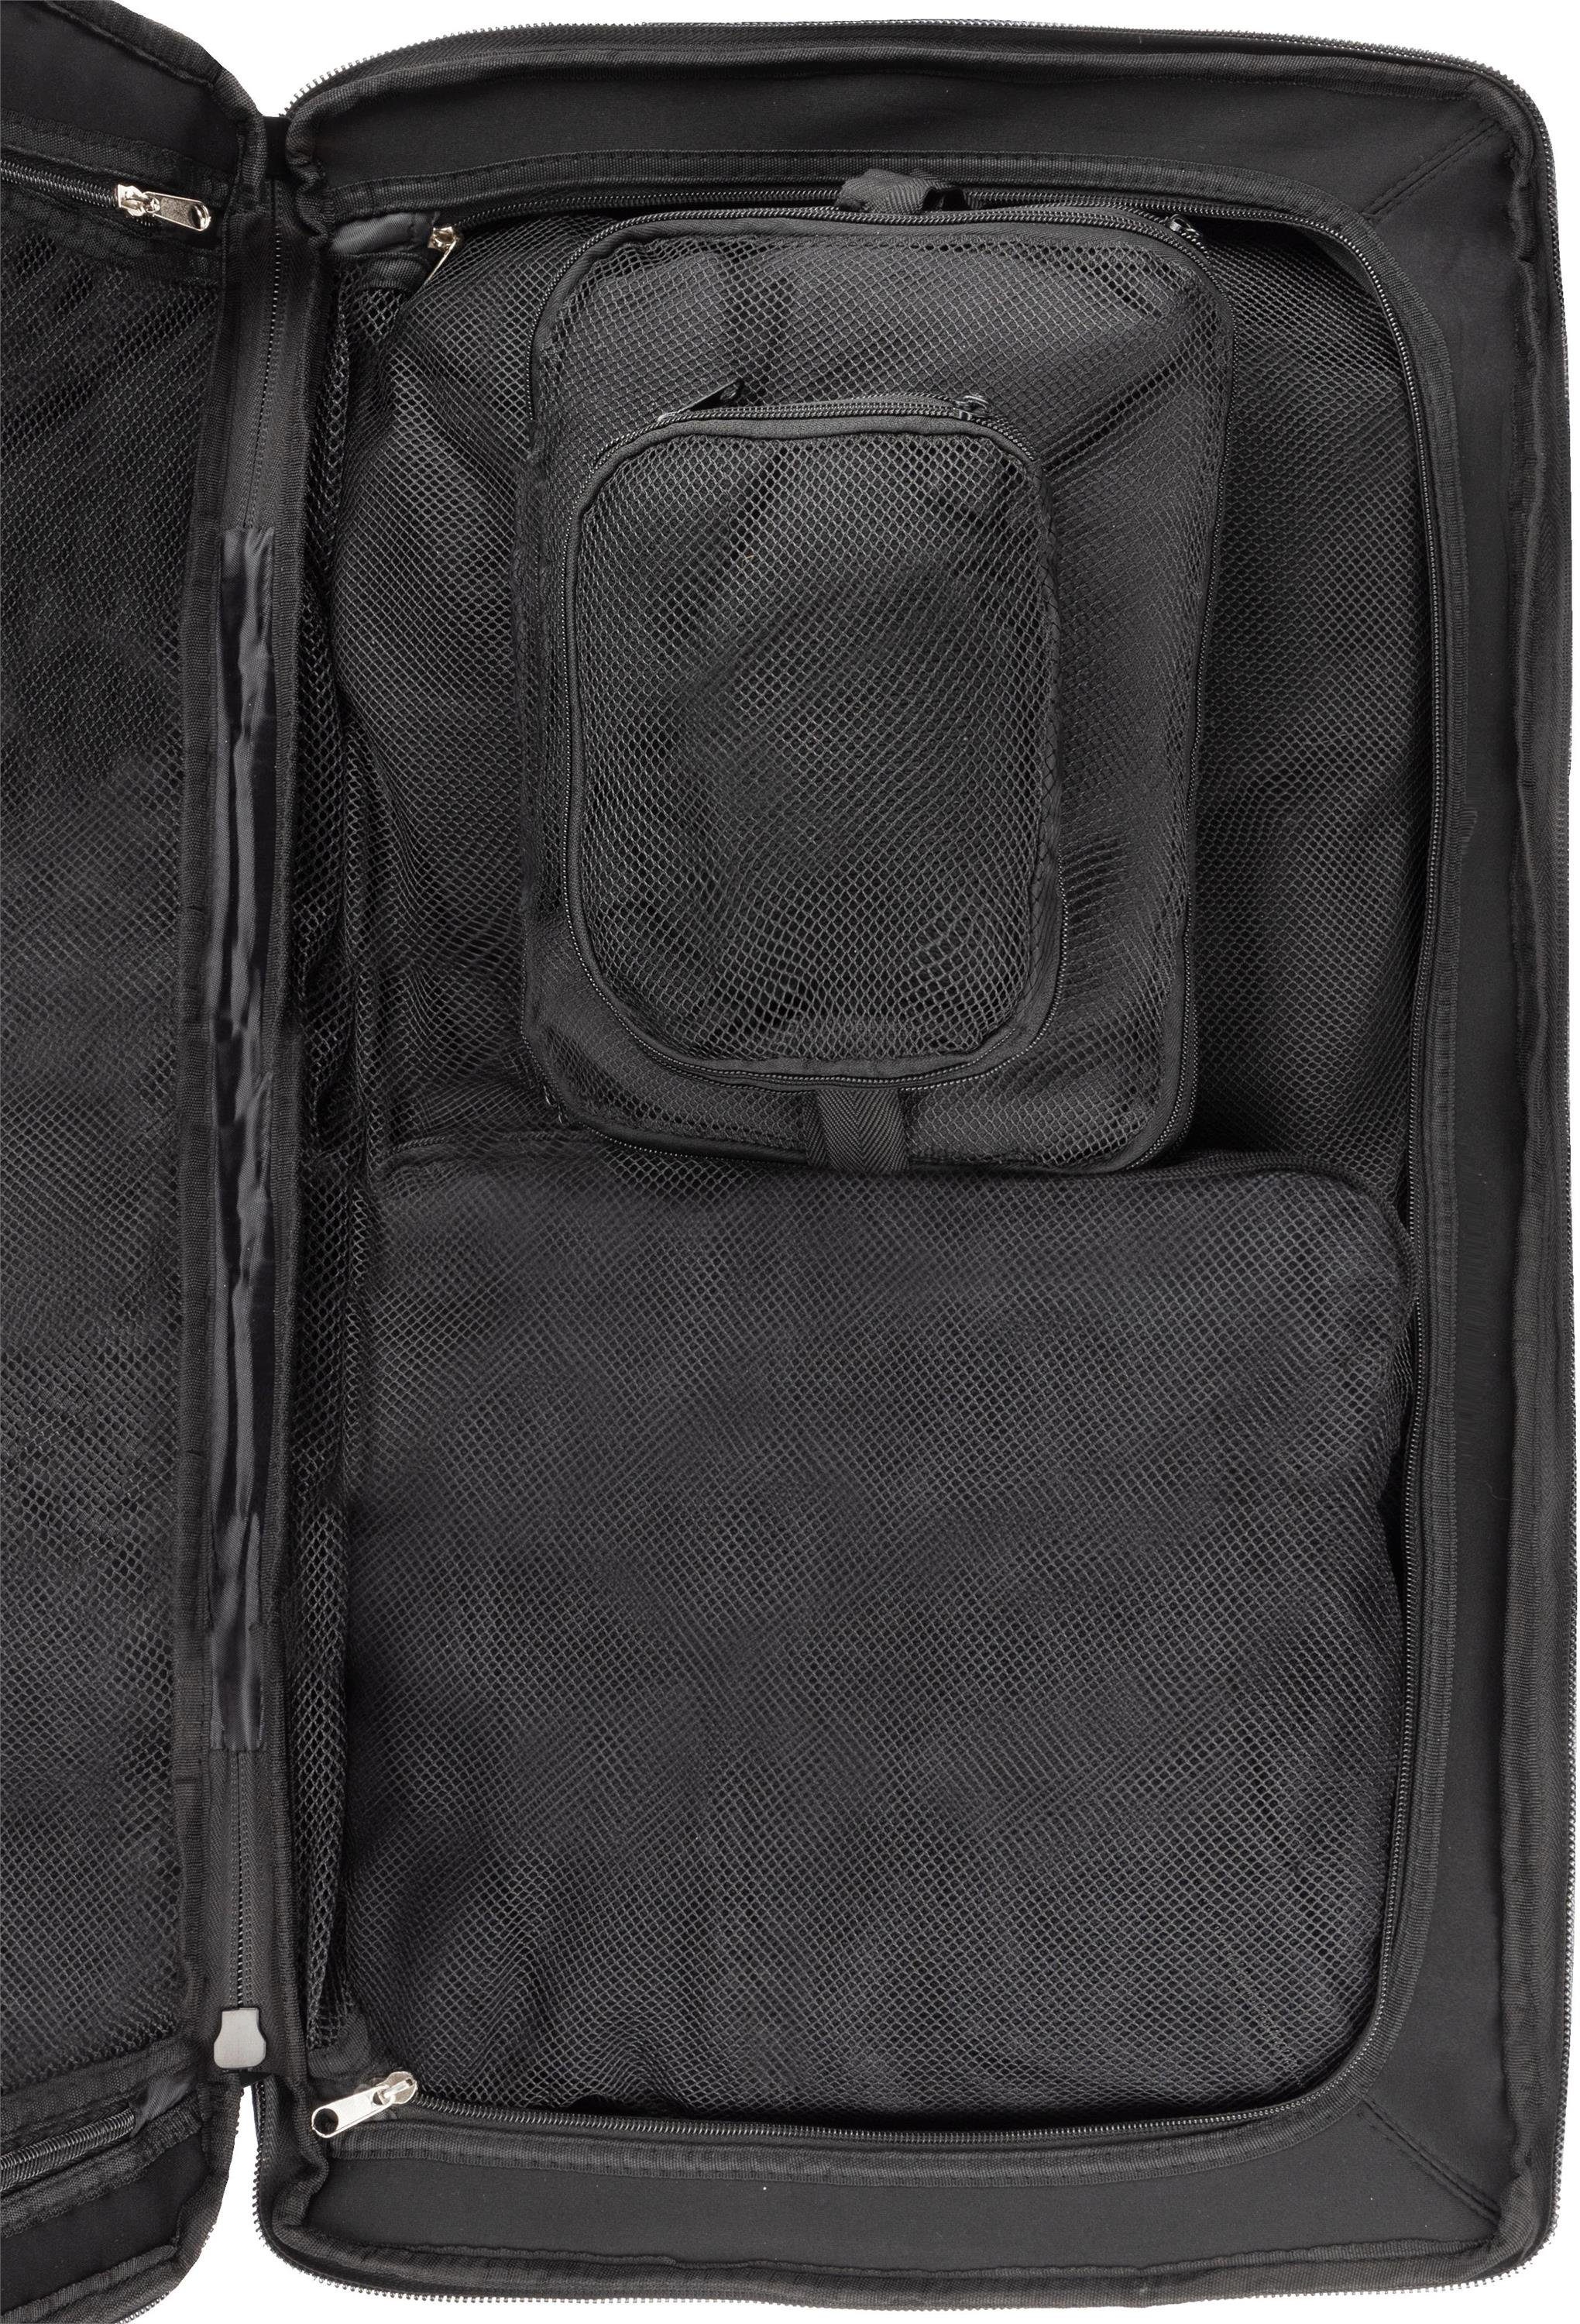 normani Reisetasche 125 mit mit 125, Kleidertaschen L Reisetasche Dunkelgrau/Grau Große Reisetasche 4 Rollen Aurori